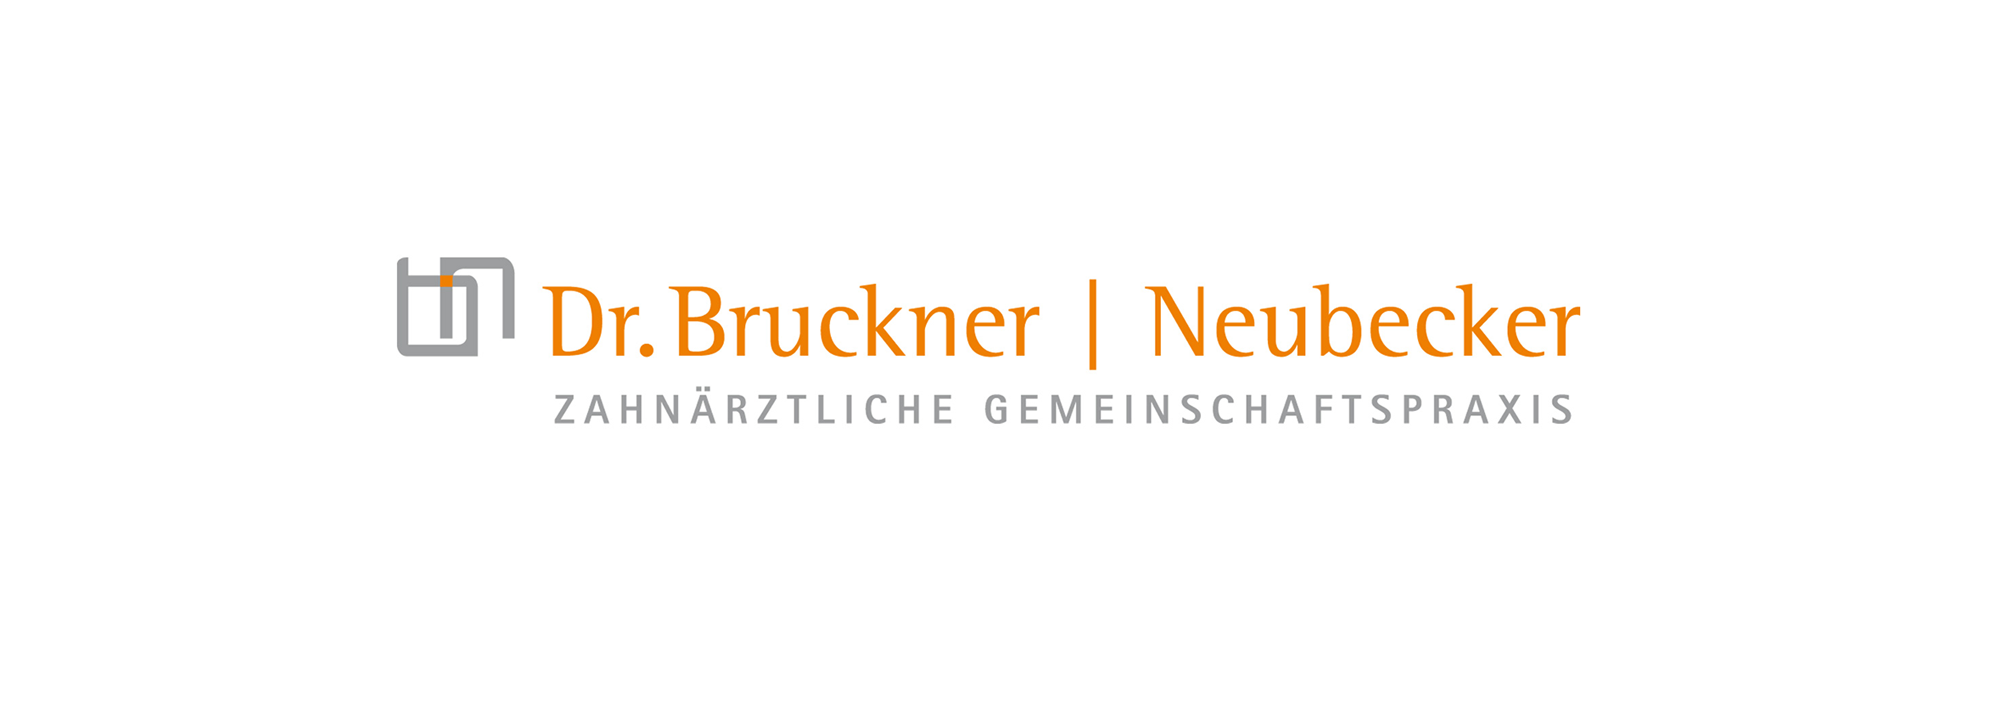 Ö-bergstromdesign.de-projekte-drbruckner-logo